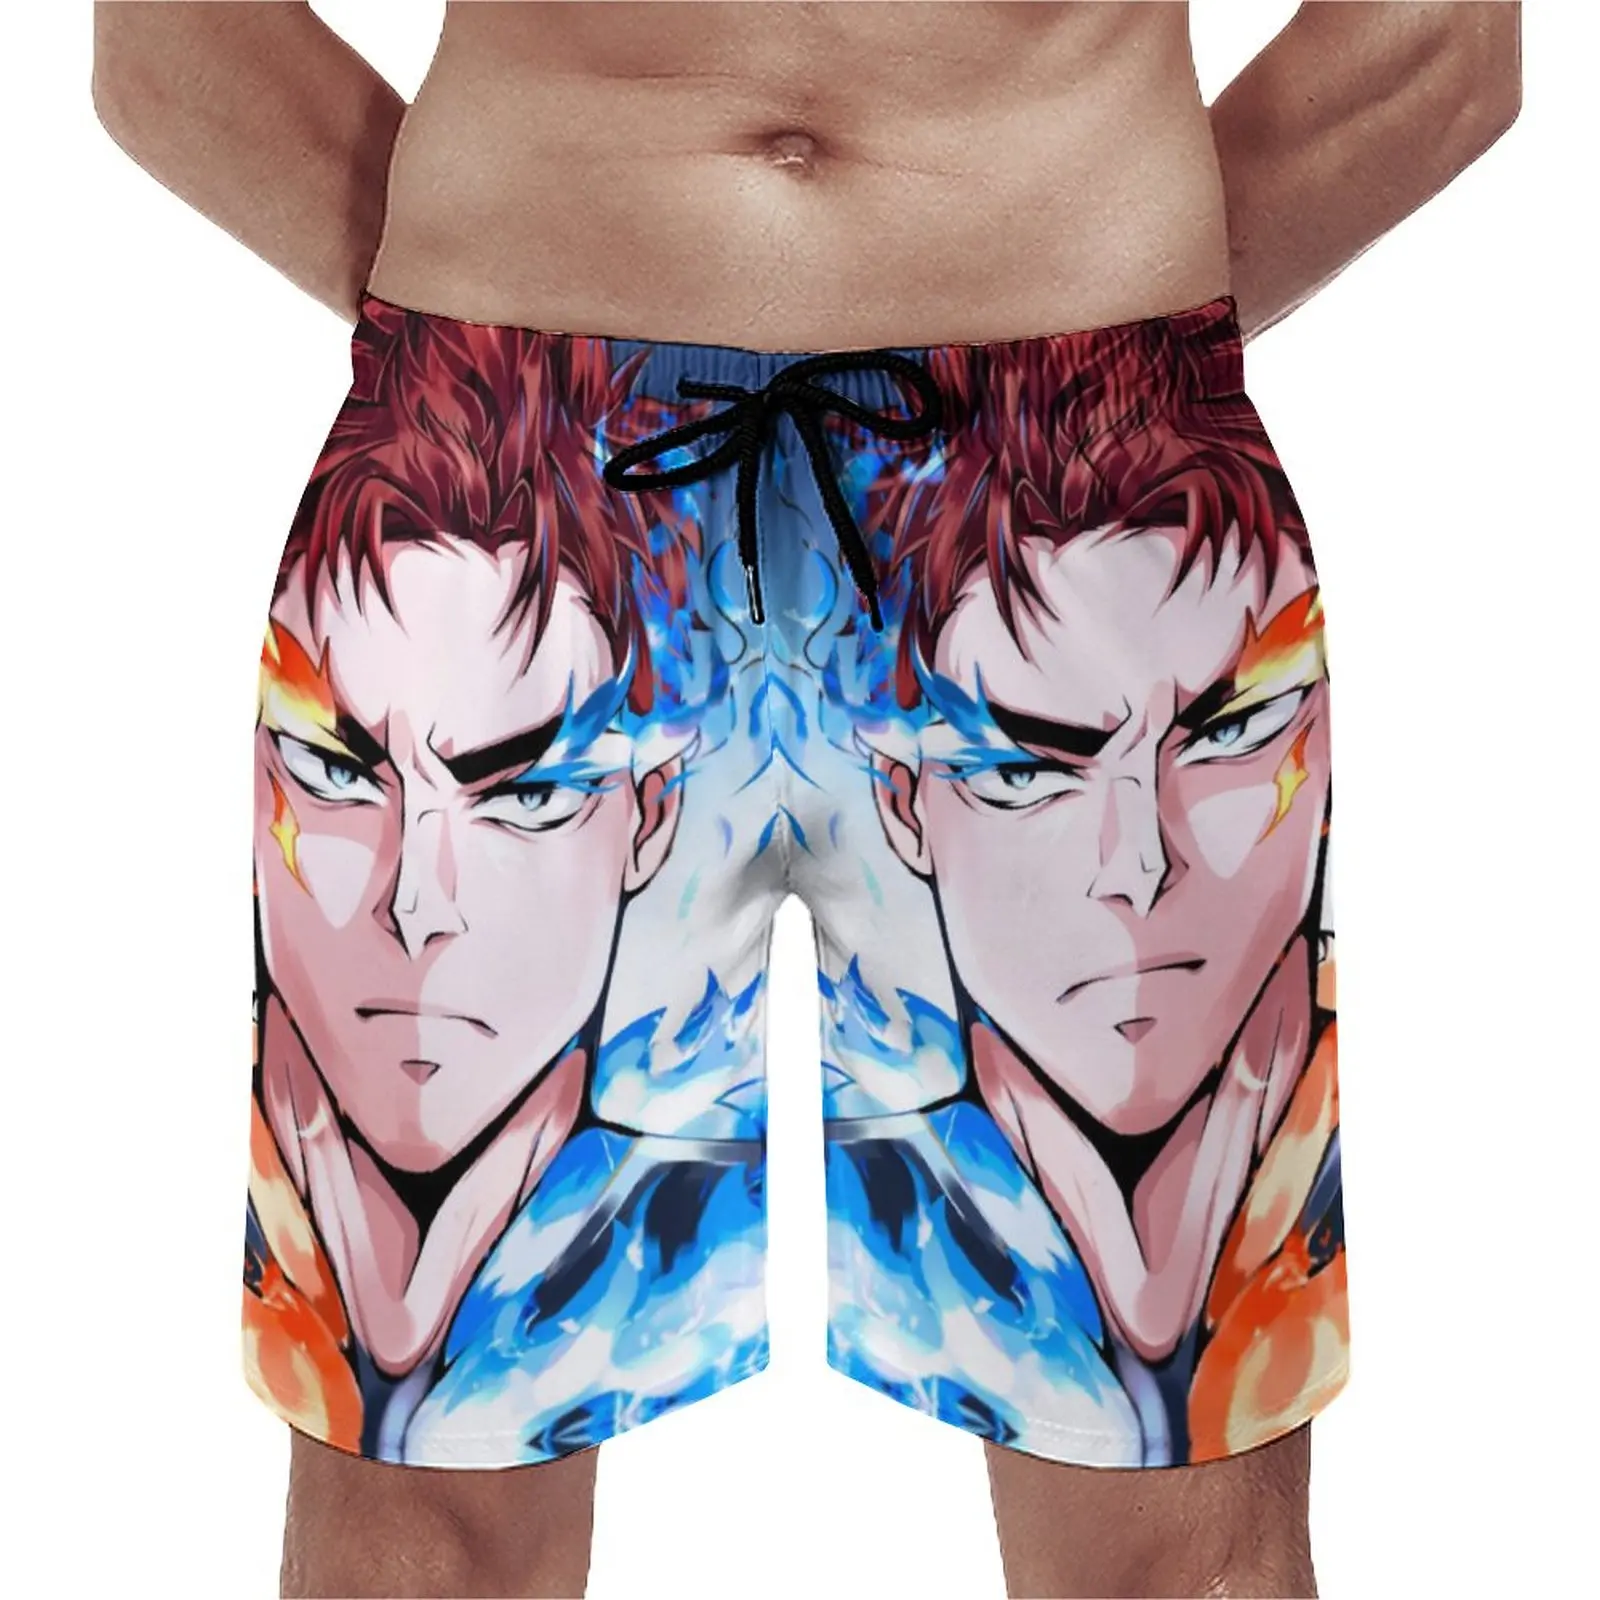 

Спортивные шорты Young Enji Todoroki, пляжные шорты My Hero моя геройская академия, популярные мужские Классические плавки с принтом, большие размеры 3XL